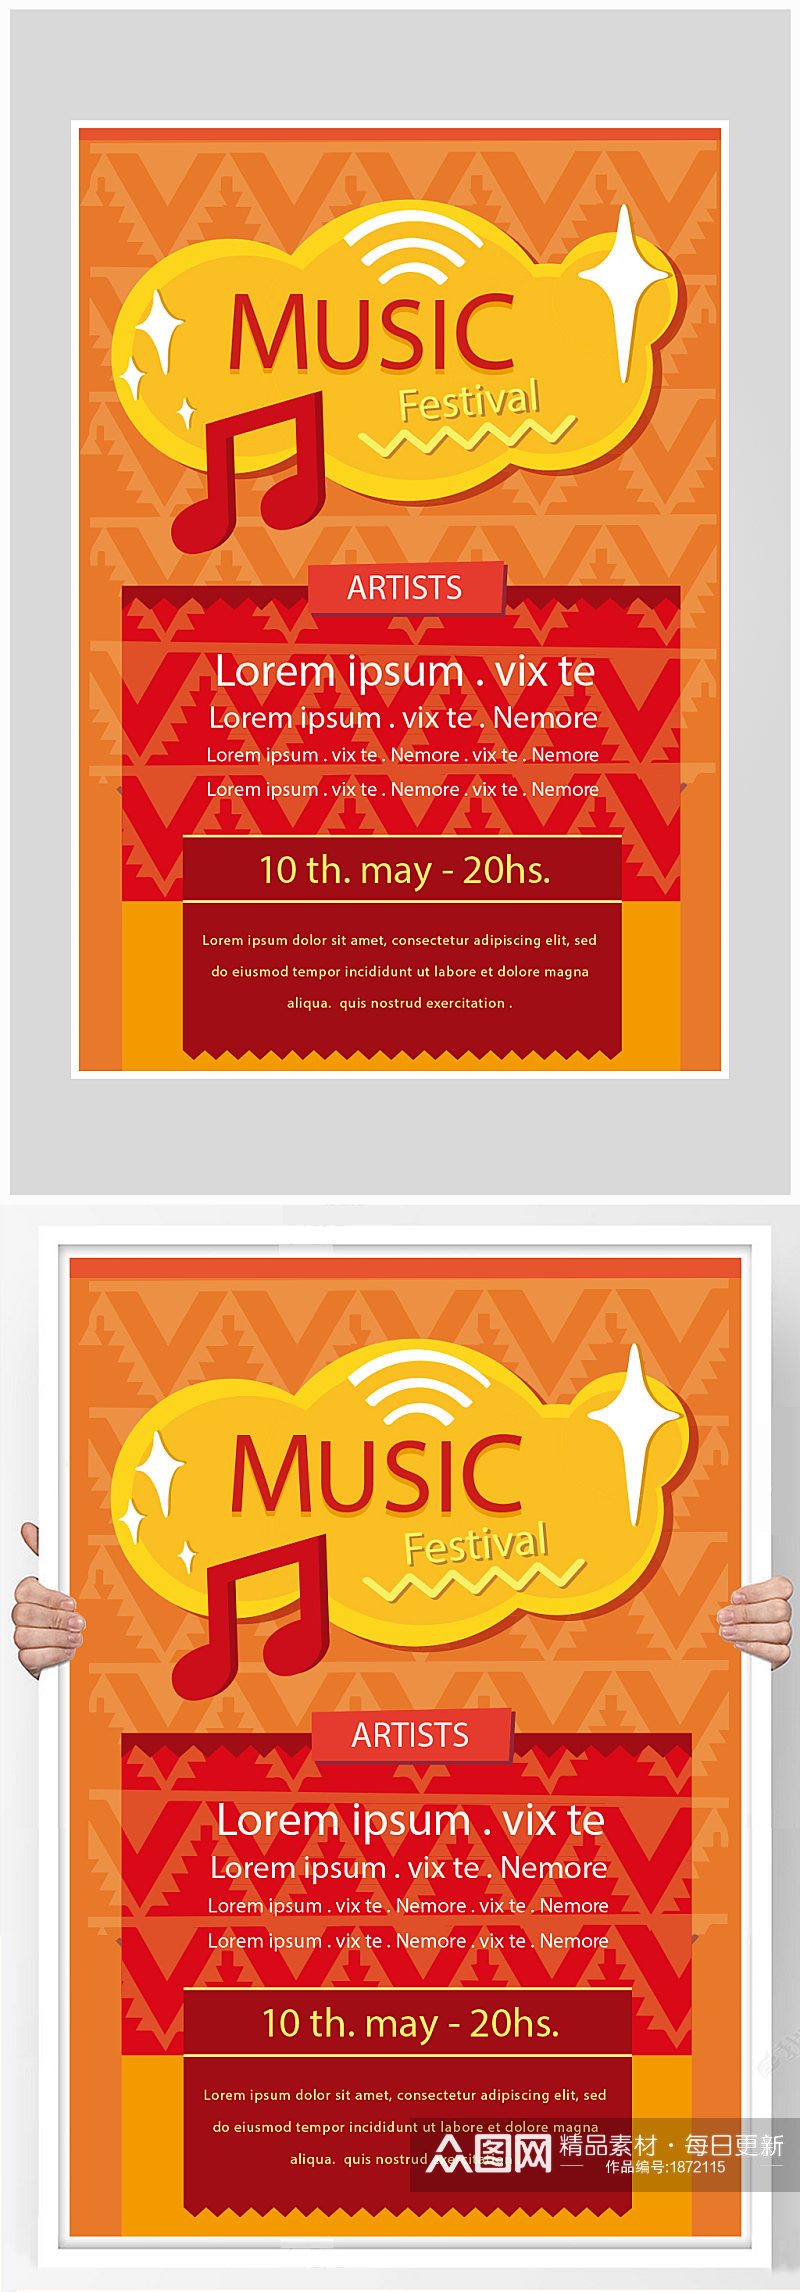 创意矢量橙色音乐会音乐节海报设计素材